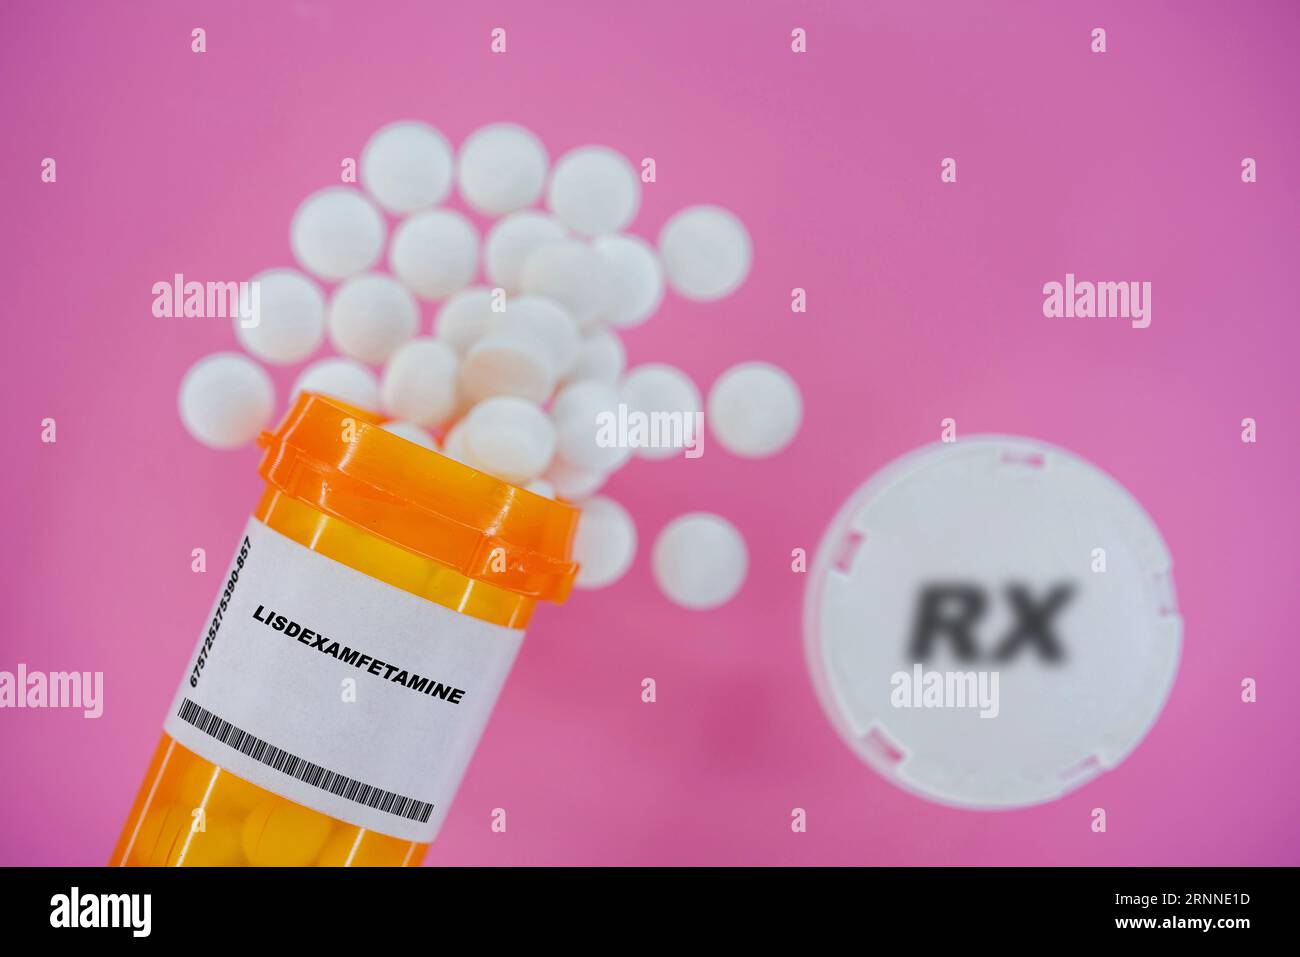 Lisdexamfetamine Rx píldoras de medicina en vial pláctico con tabletas. Pastillas derramando desde el contenedor amarillo sobre fondo rosa. Foto de stock